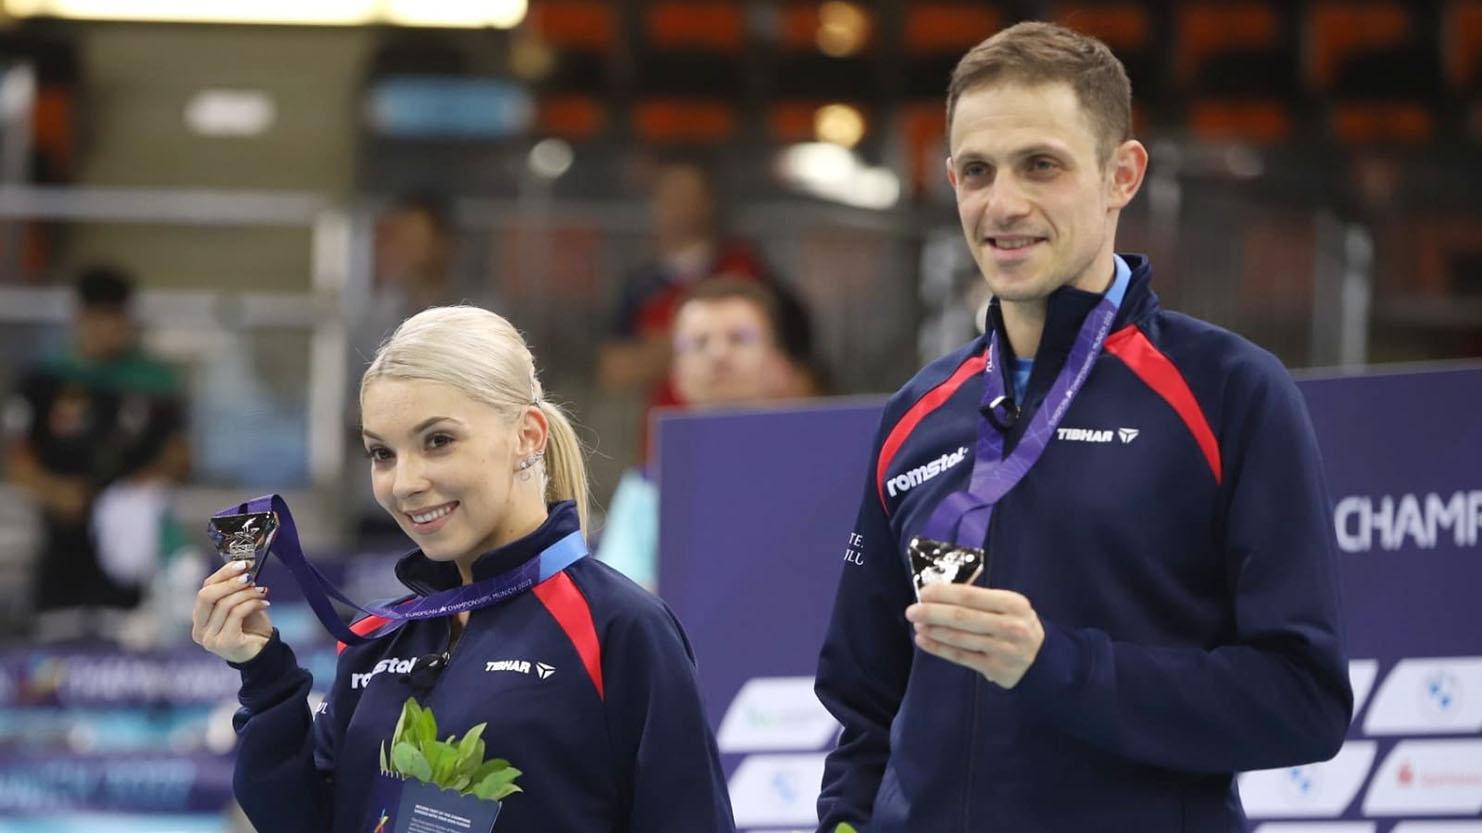 Bernadette Szocs și Adrian Ionescu au câștigat a patra medalie europeană la dublu mixt, după cele două de bronz de la CE din 2012 şi 2016 şi cea de argint din 2019, de la Jocurile Europene